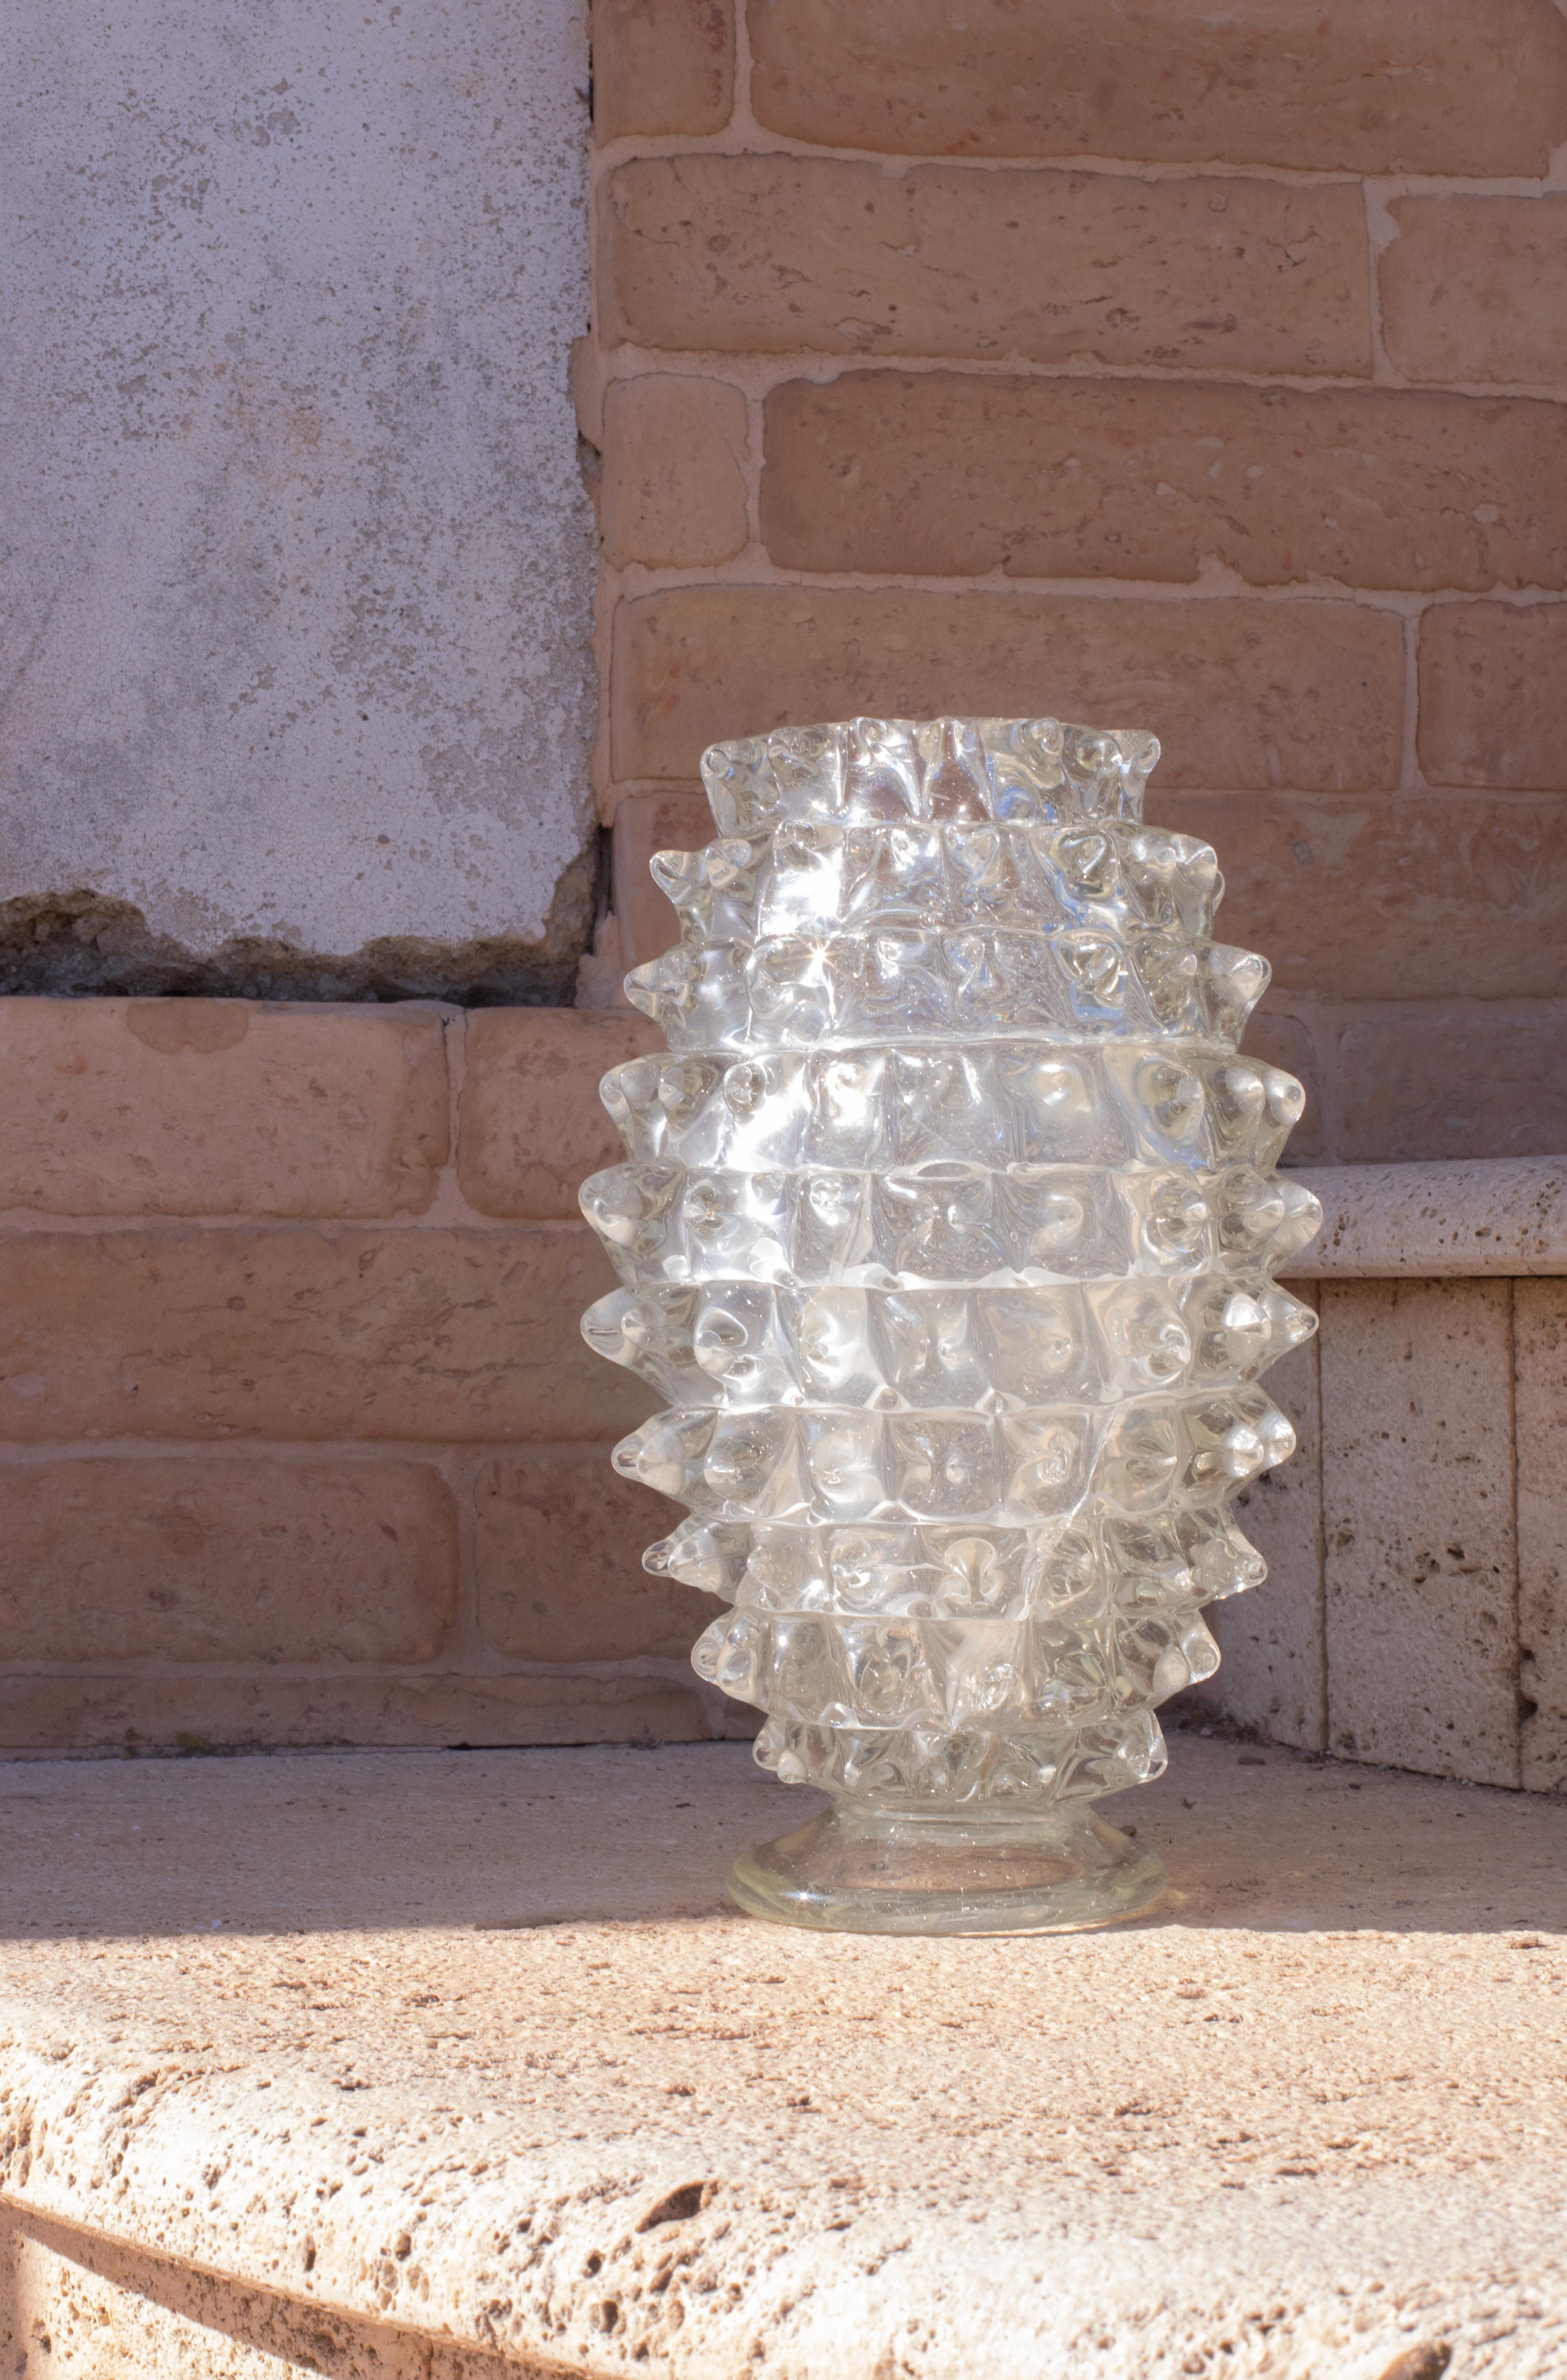 Erstaunlich Mitte des Jahrhunderts mundgeblasenen rostrato Kristall Murano Glas Vase. Dieses wunderschöne Objekt wurde in den 1940er Jahren in Italien von Ercole Barovier für Barovier&Toso hergestellt.

Dieses Meisterwerk ist eine fantastische